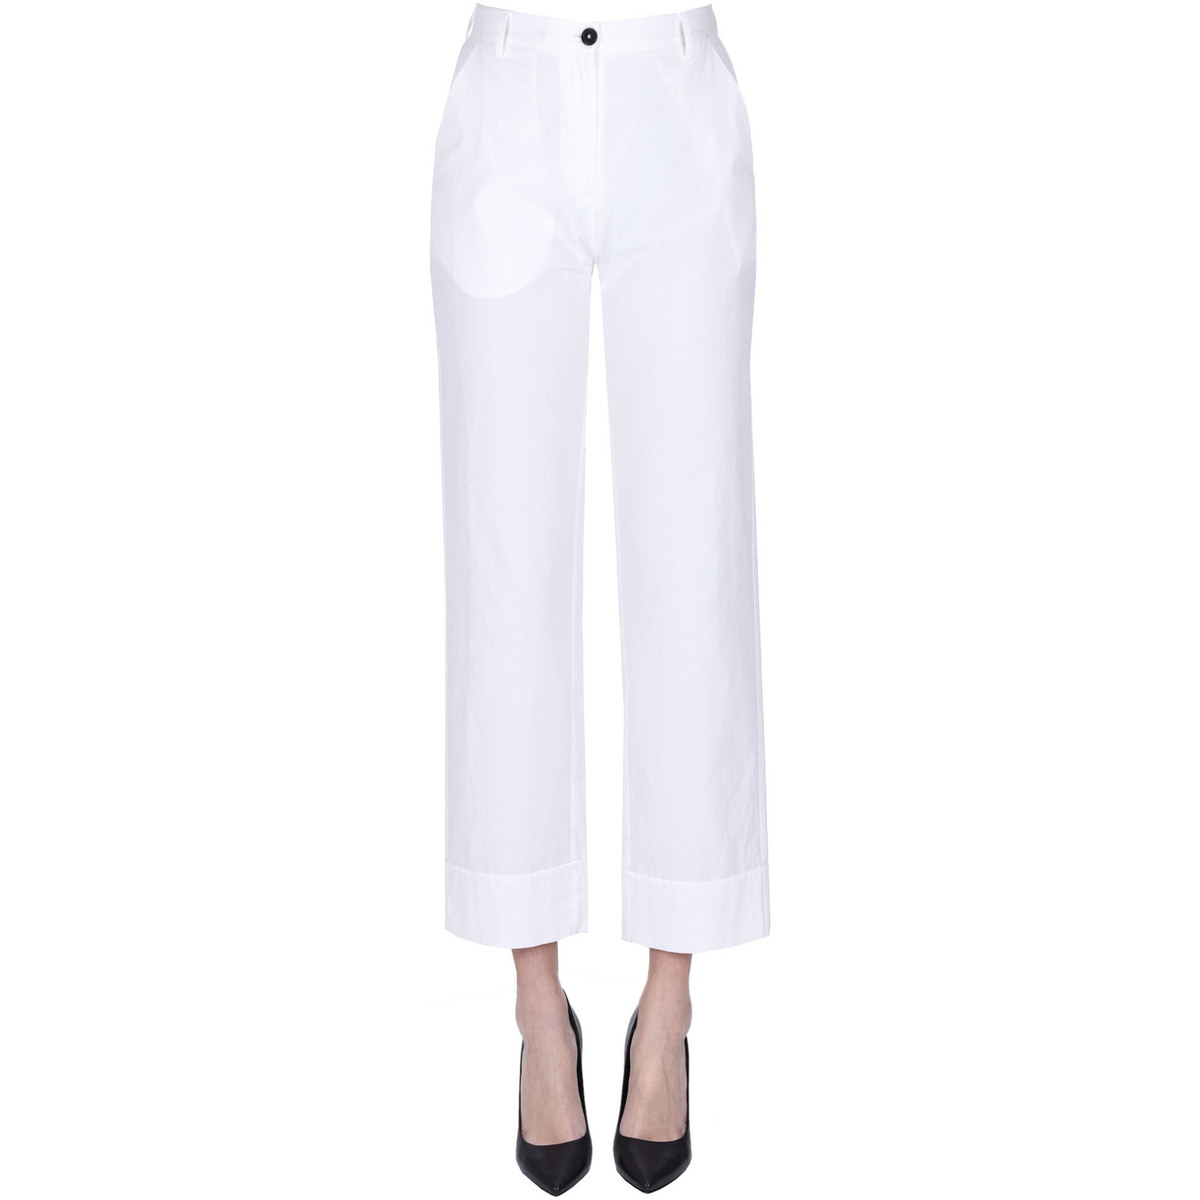 textil Mujer Pantalones chinos Massimo Alba PNP00003130AE Blanco